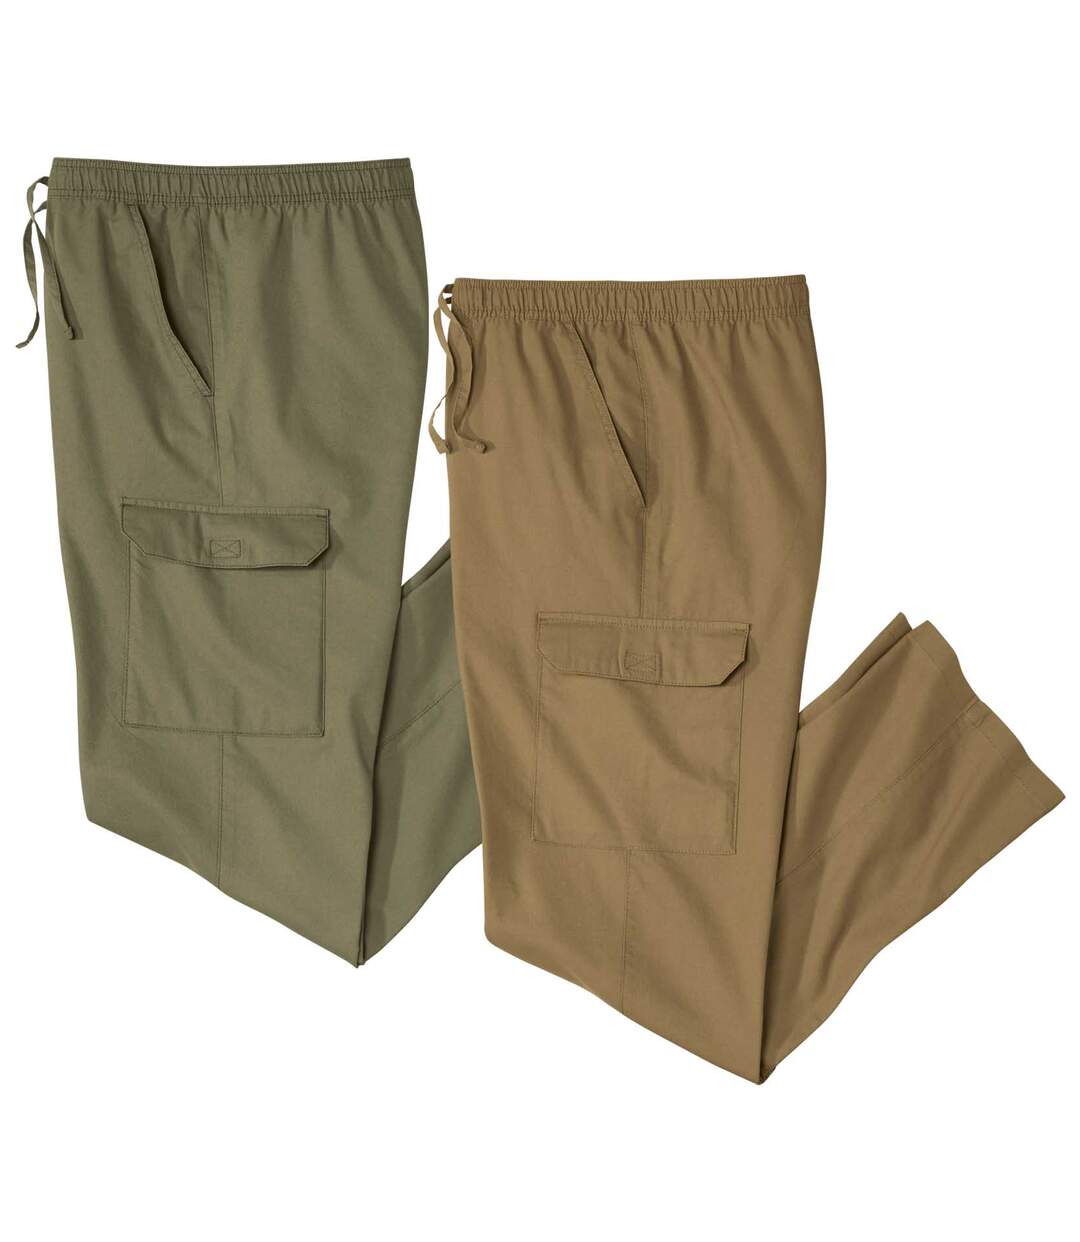 Pack of 2 Men's Cargo Pants - Khaki Camel Atlas For Men